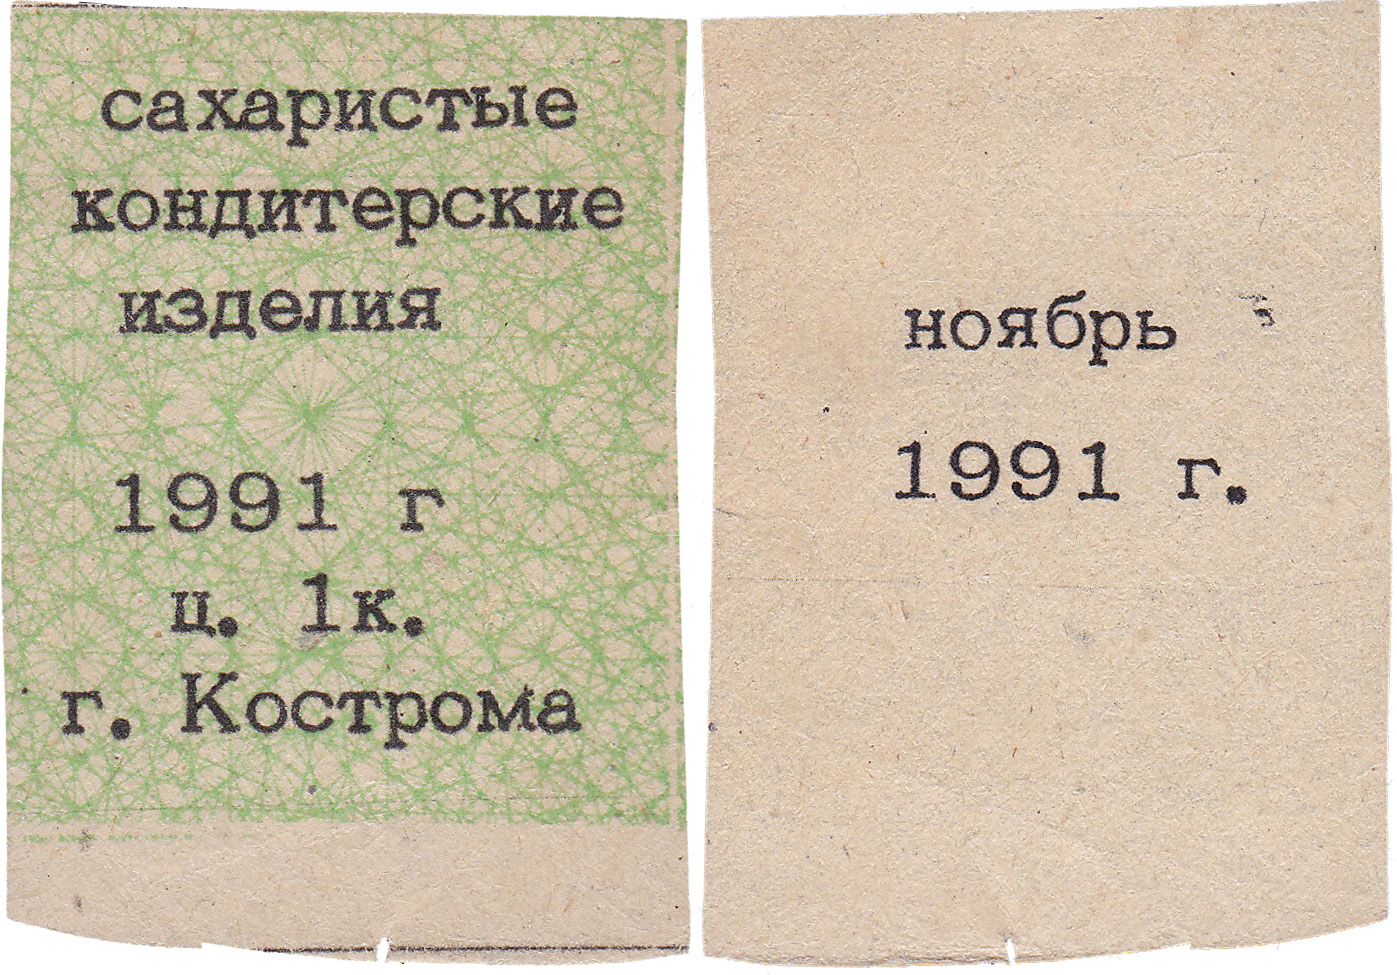 Талон (карточка) 1 Копейка. Сахаристые кондитерские изделия. Ноябрь 1991 год. Кострома